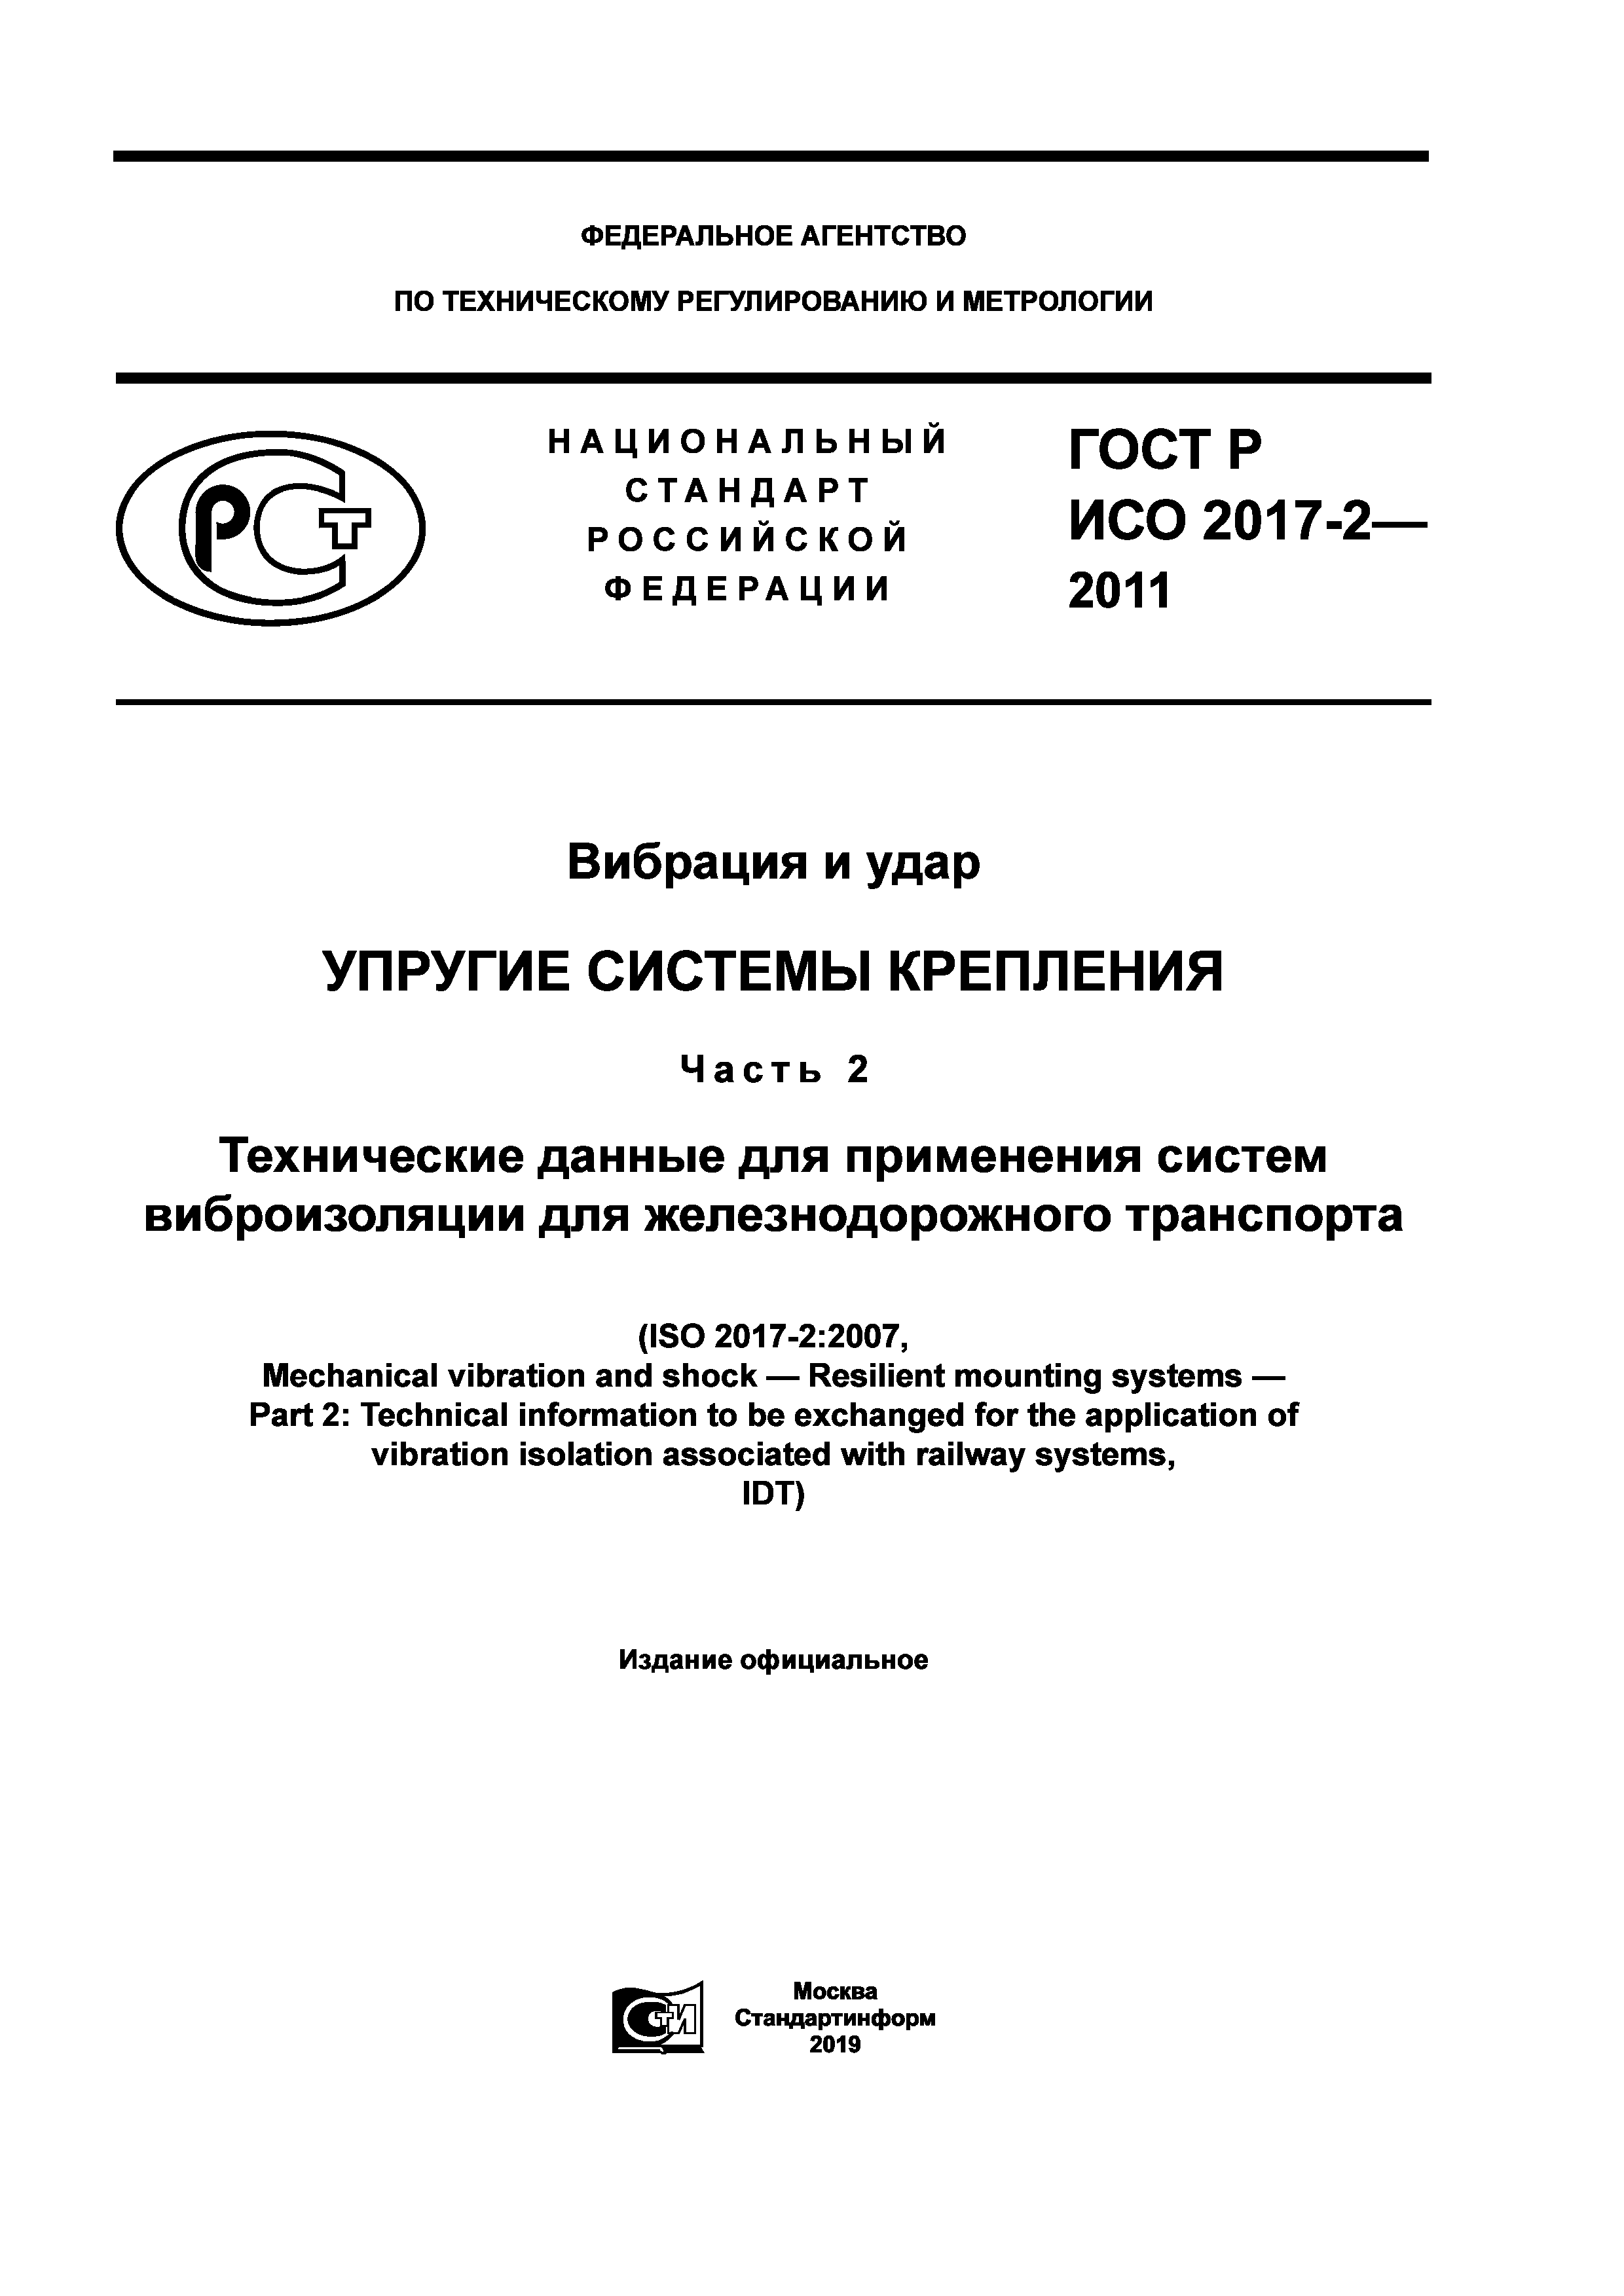 ГОСТ Р ИСО 2017-2-2011